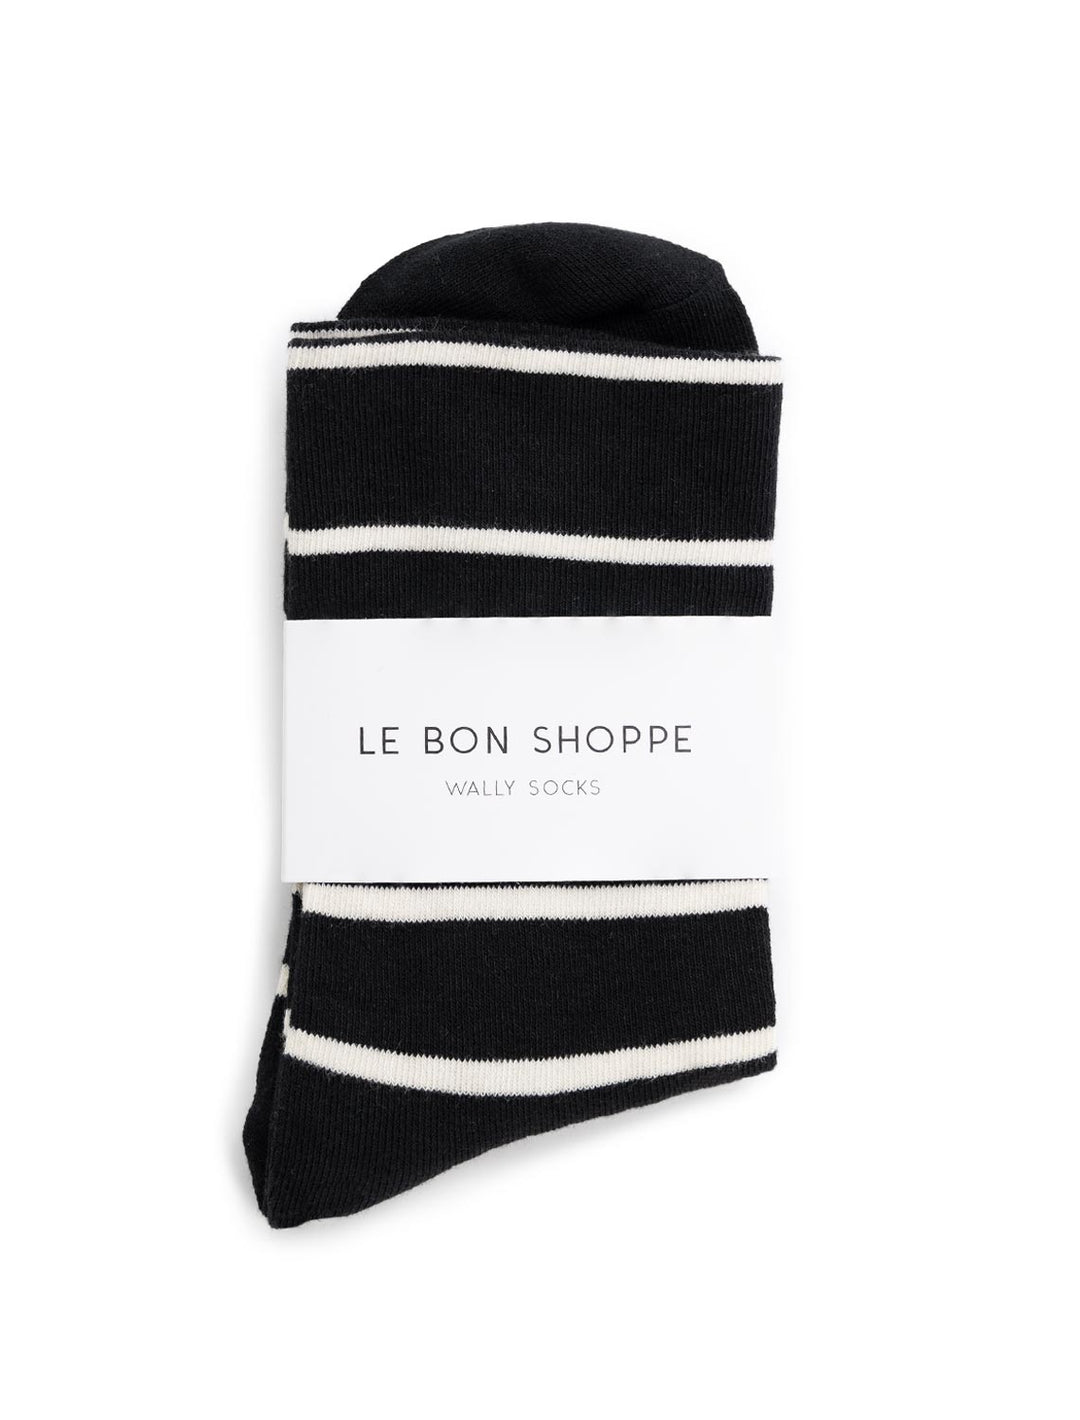 Overhead view of Le Bon Shoppe's wally socks in black.